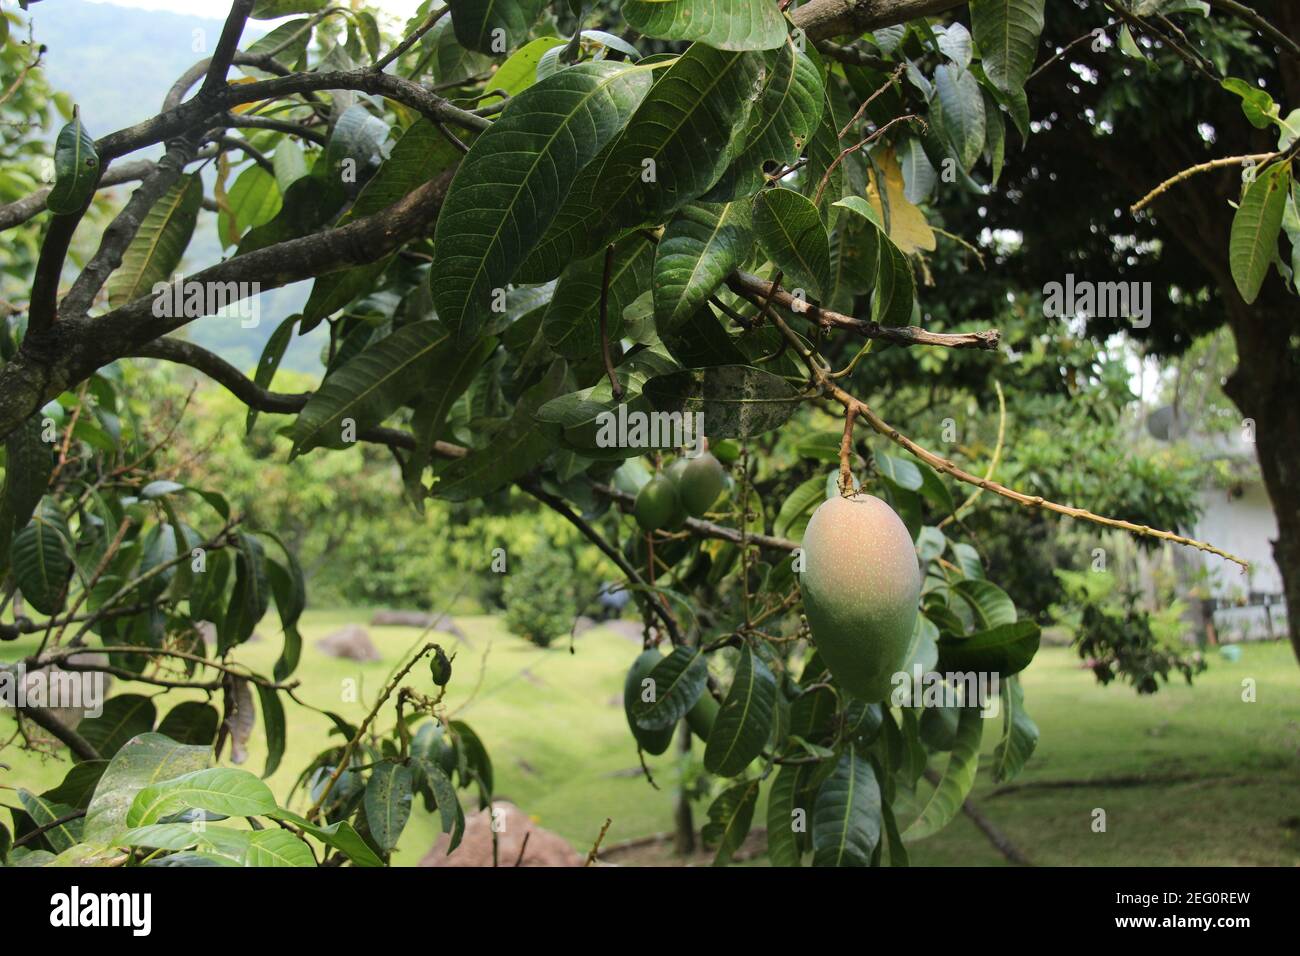 Frische Mangos hängen auf dem Baum bereit zur Ernte. Obstplantagen in einem sehr fruchtbaren tropischen Klima. Grüne Mango mit ein wenig rote Mischung auf t Stockfoto